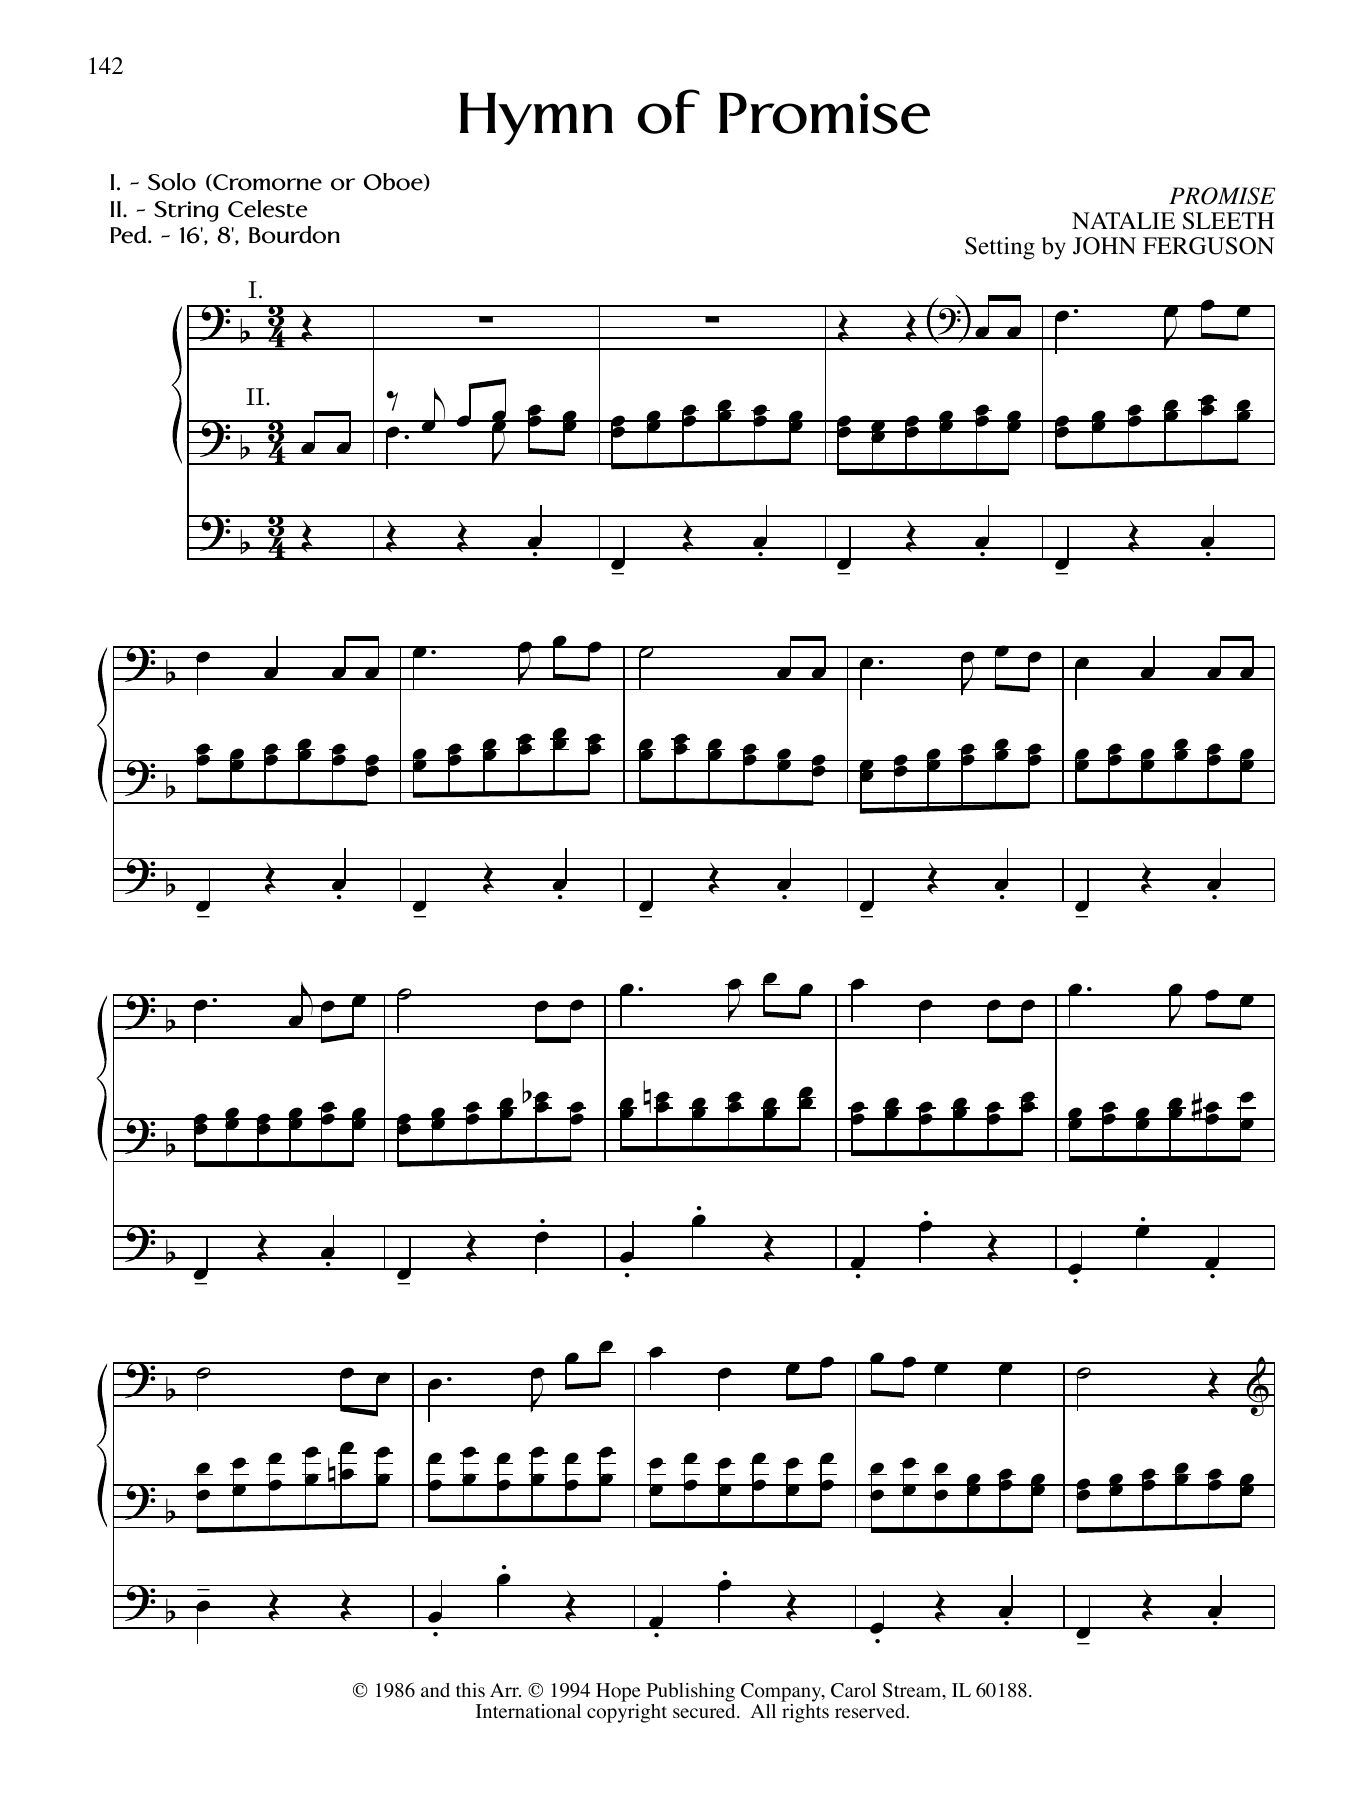 Download JOHN FERGUSON Hymn of Promise Sheet Music